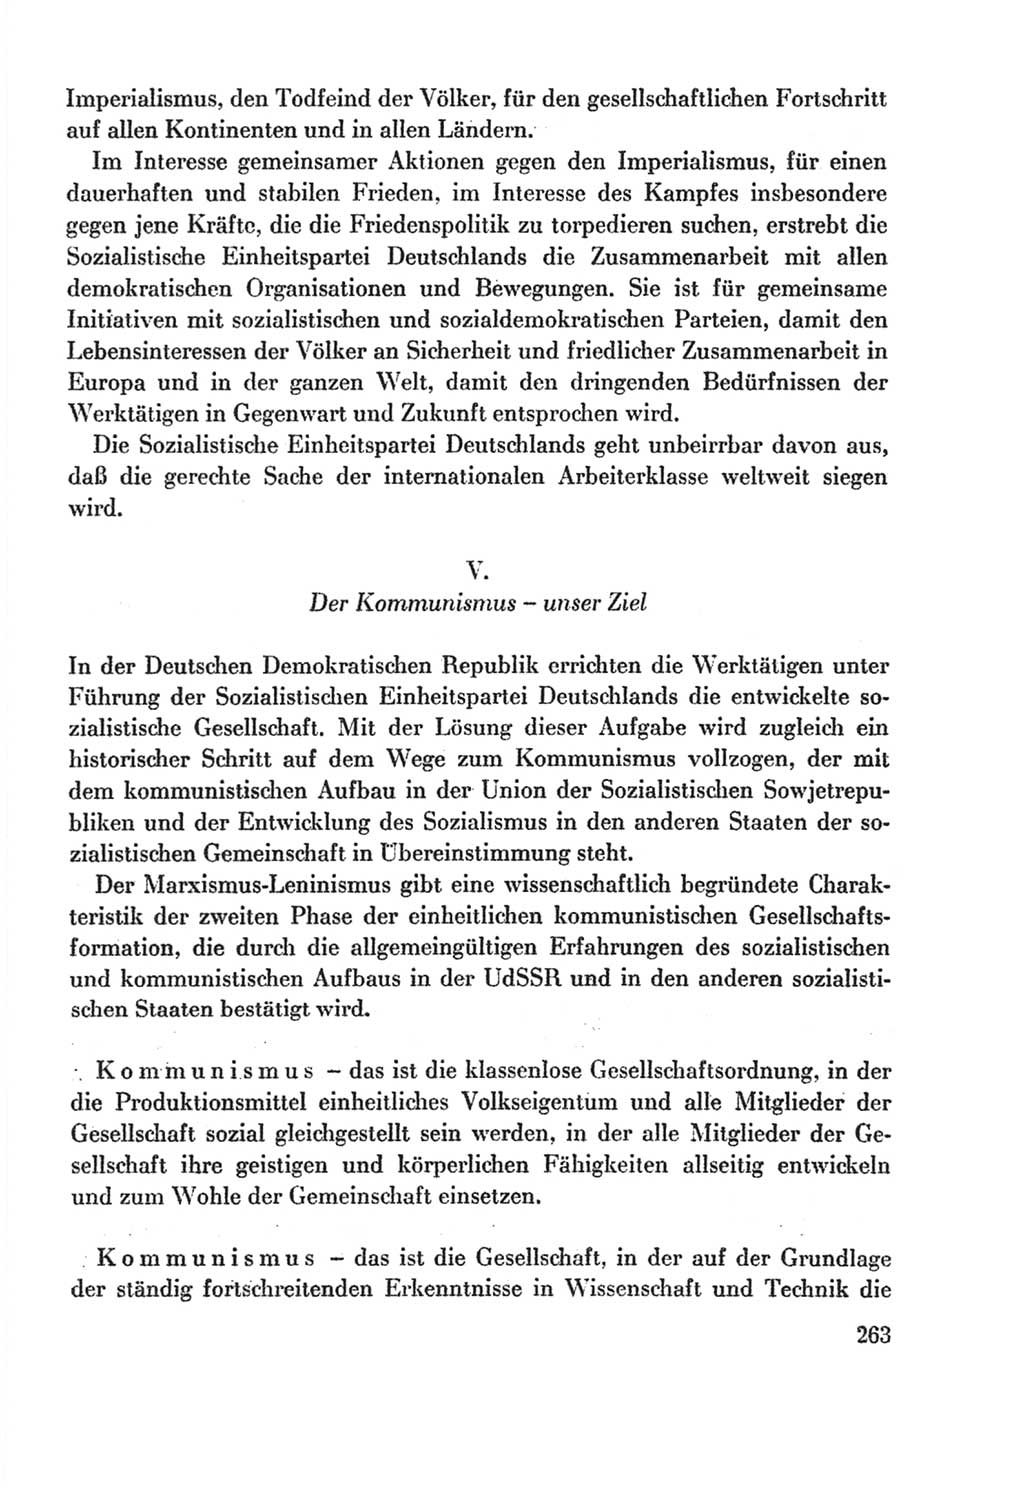 Protokoll der Verhandlungen des Ⅸ. Parteitages der Sozialistischen Einheitspartei Deutschlands (SED) [Deutsche Demokratische Republik (DDR)] 1976, Band 2, Seite 263 (Prot. Verh. Ⅸ. PT SED DDR 1976, Bd. 2, S. 263)